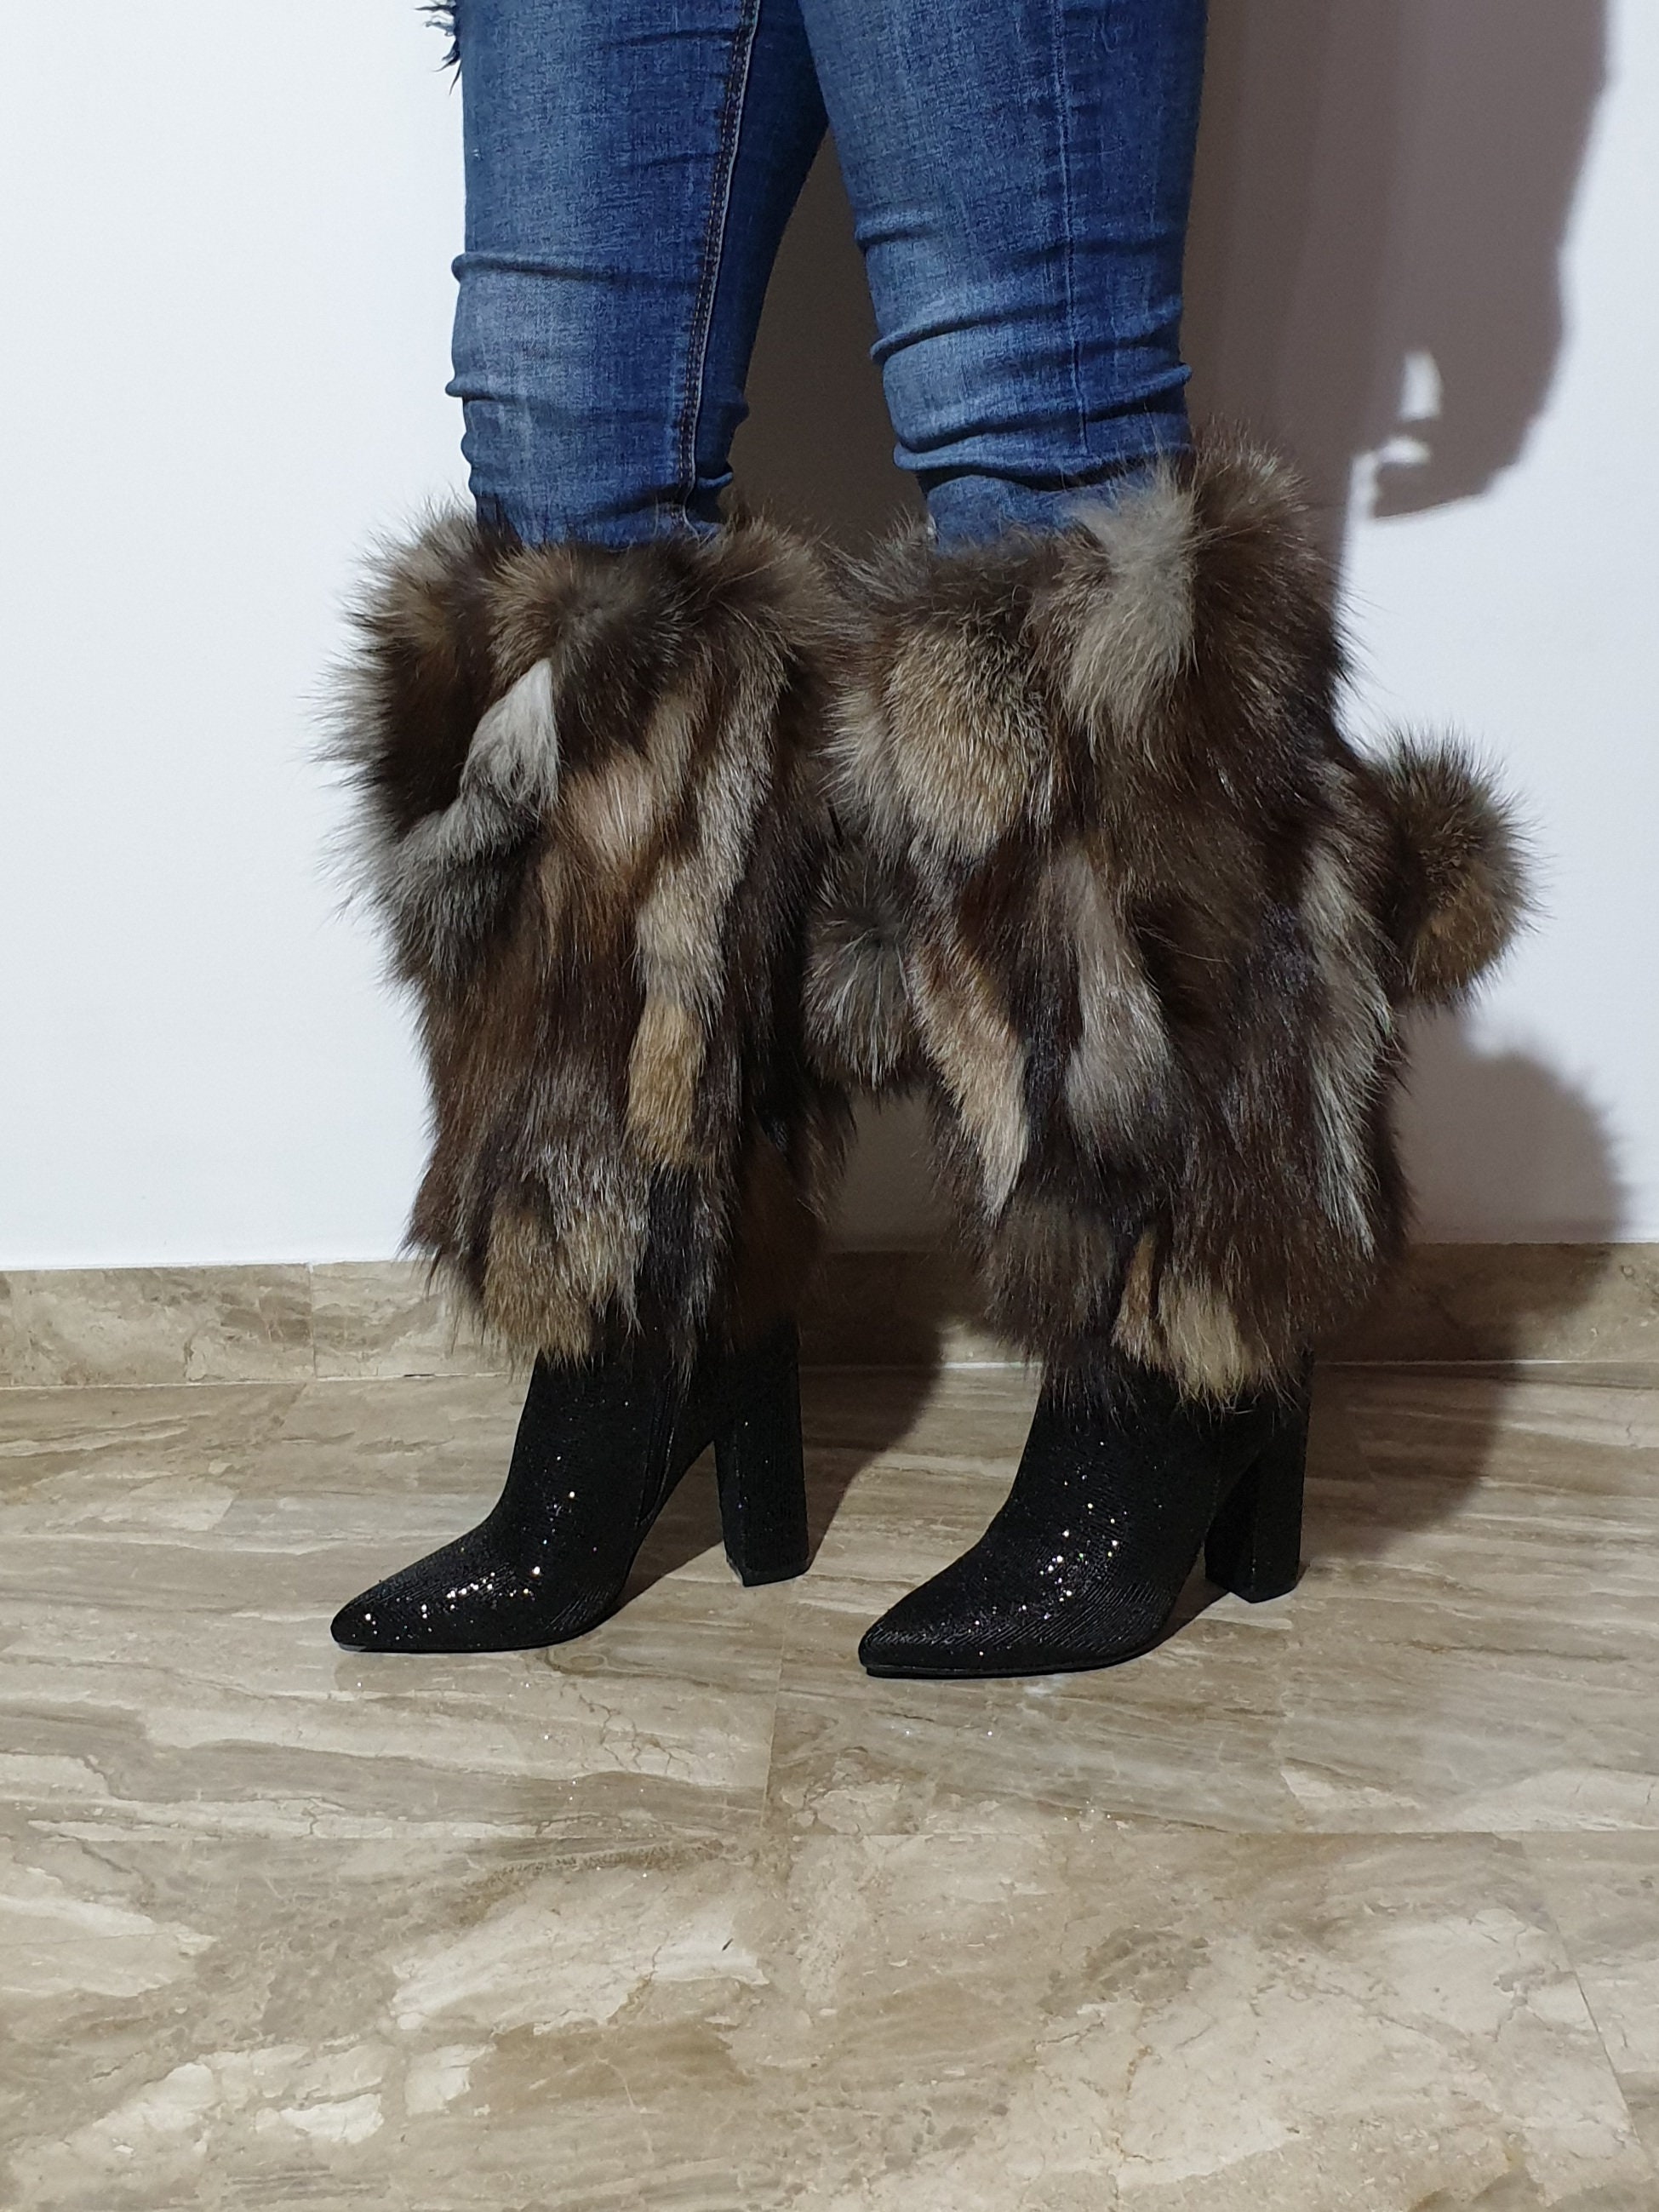 Fur Leg Cuffs Leg Warmerscrystal Fox Fur | Etsy